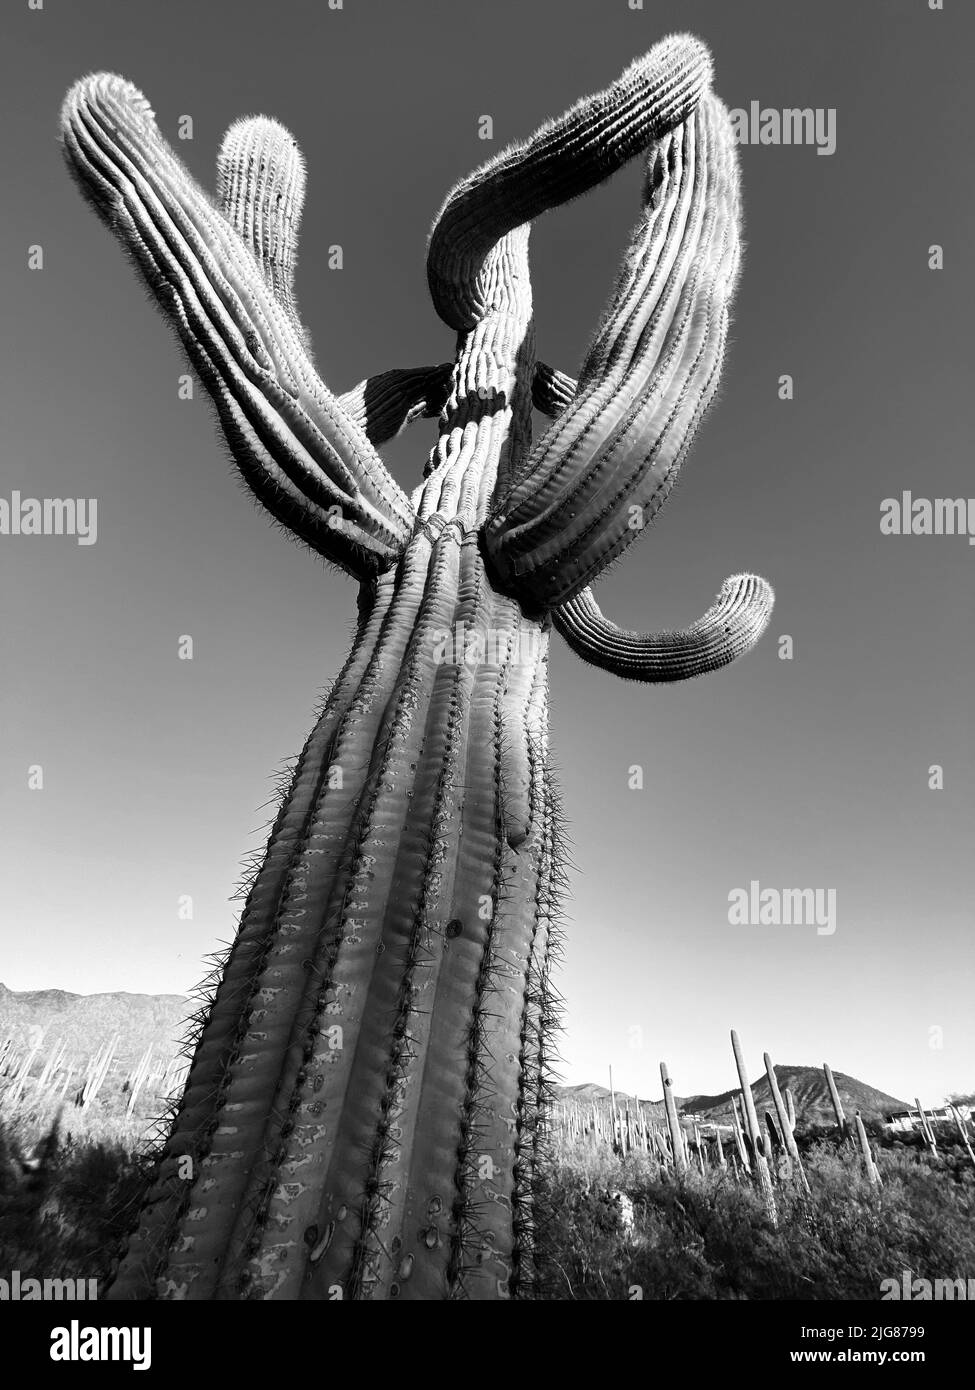 Una imagen vertical en escala de grises de un enorme cactus sobre el fondo del cielo Foto de stock